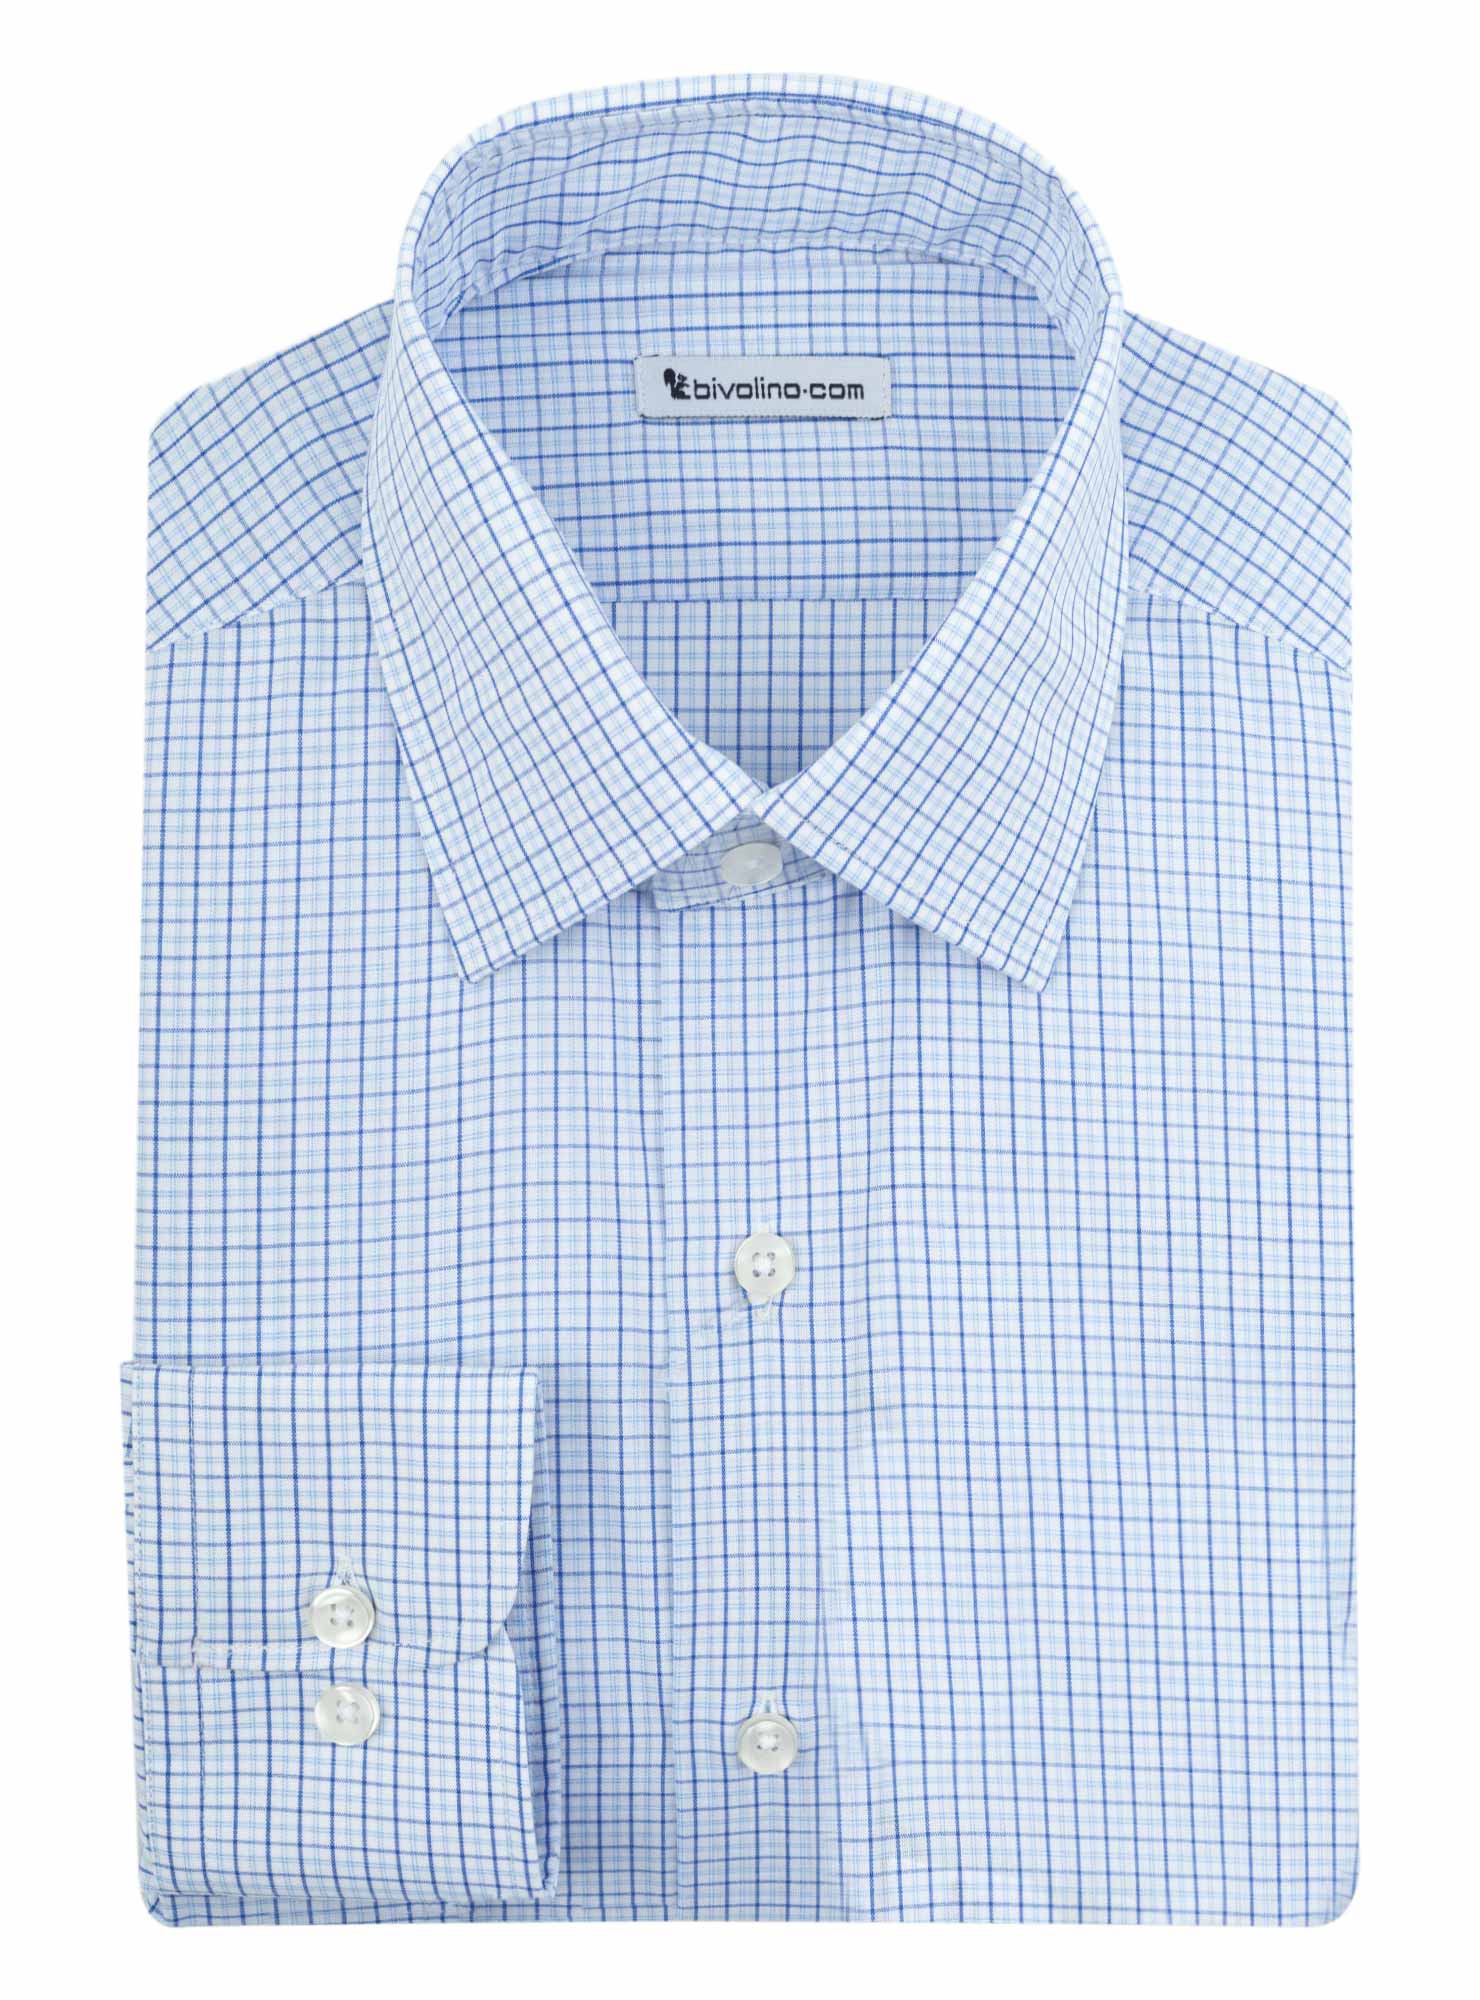 RIMINI - cot-mix check business blue tailored men shirt - BOREO 1